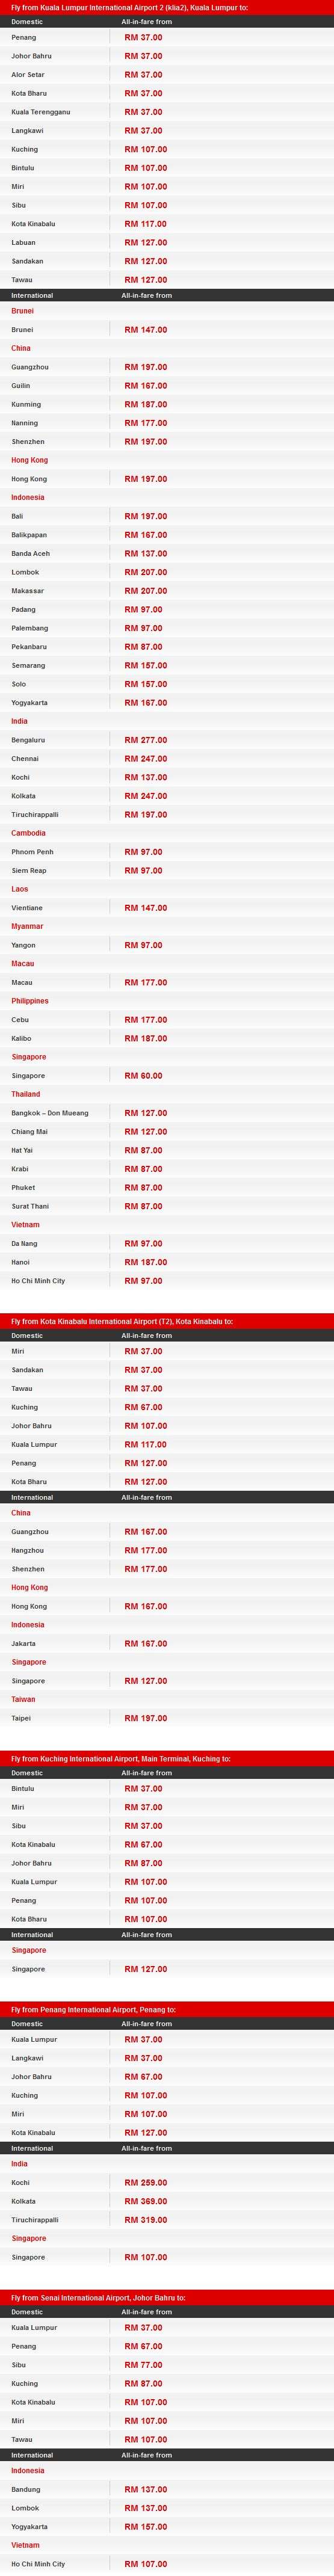 AirAsia Kami Malaysia Promotion Fares Details